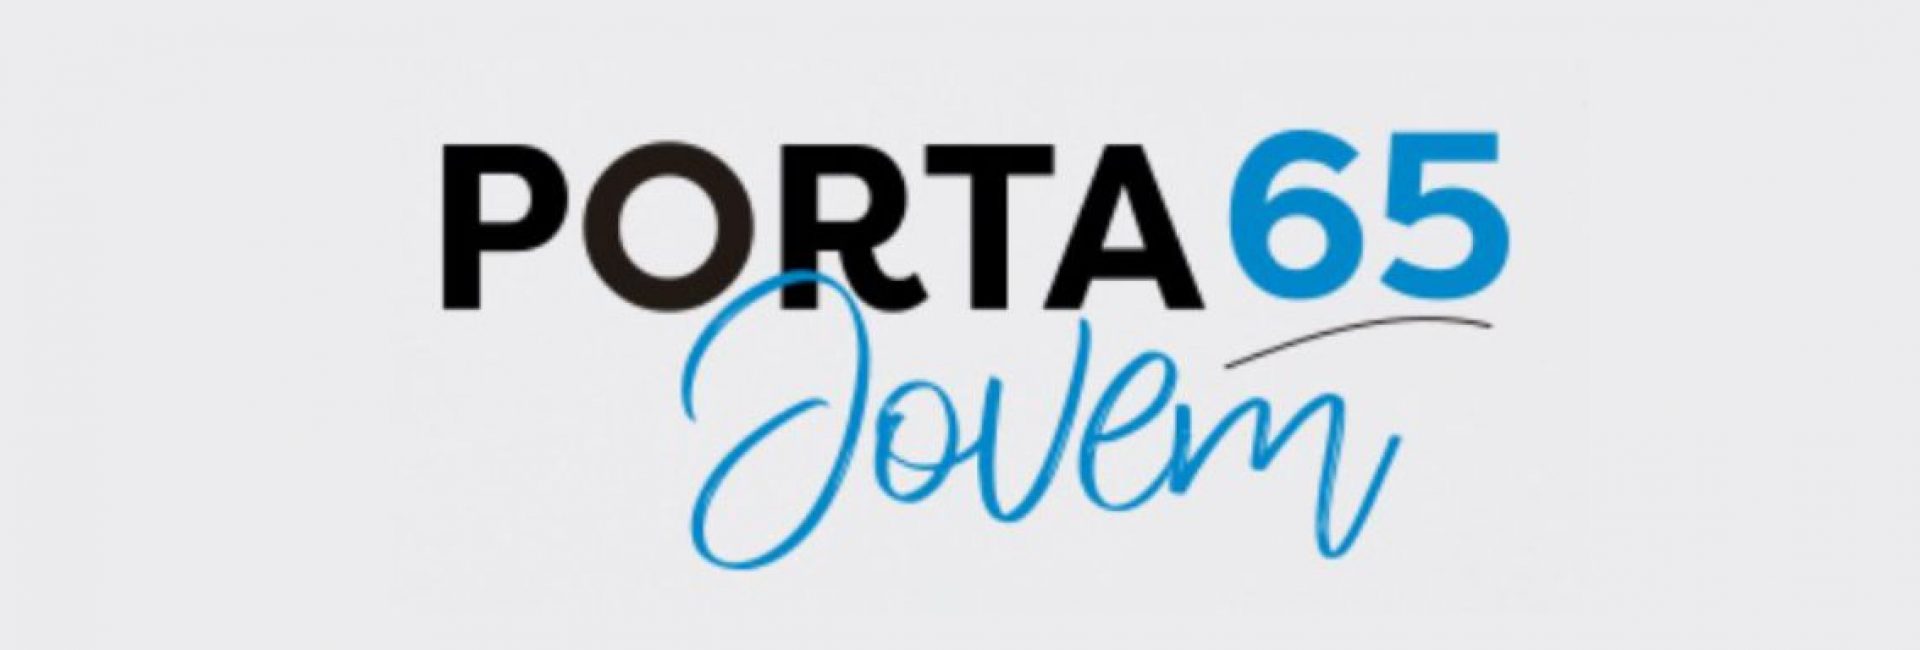 porta65jovem_logo